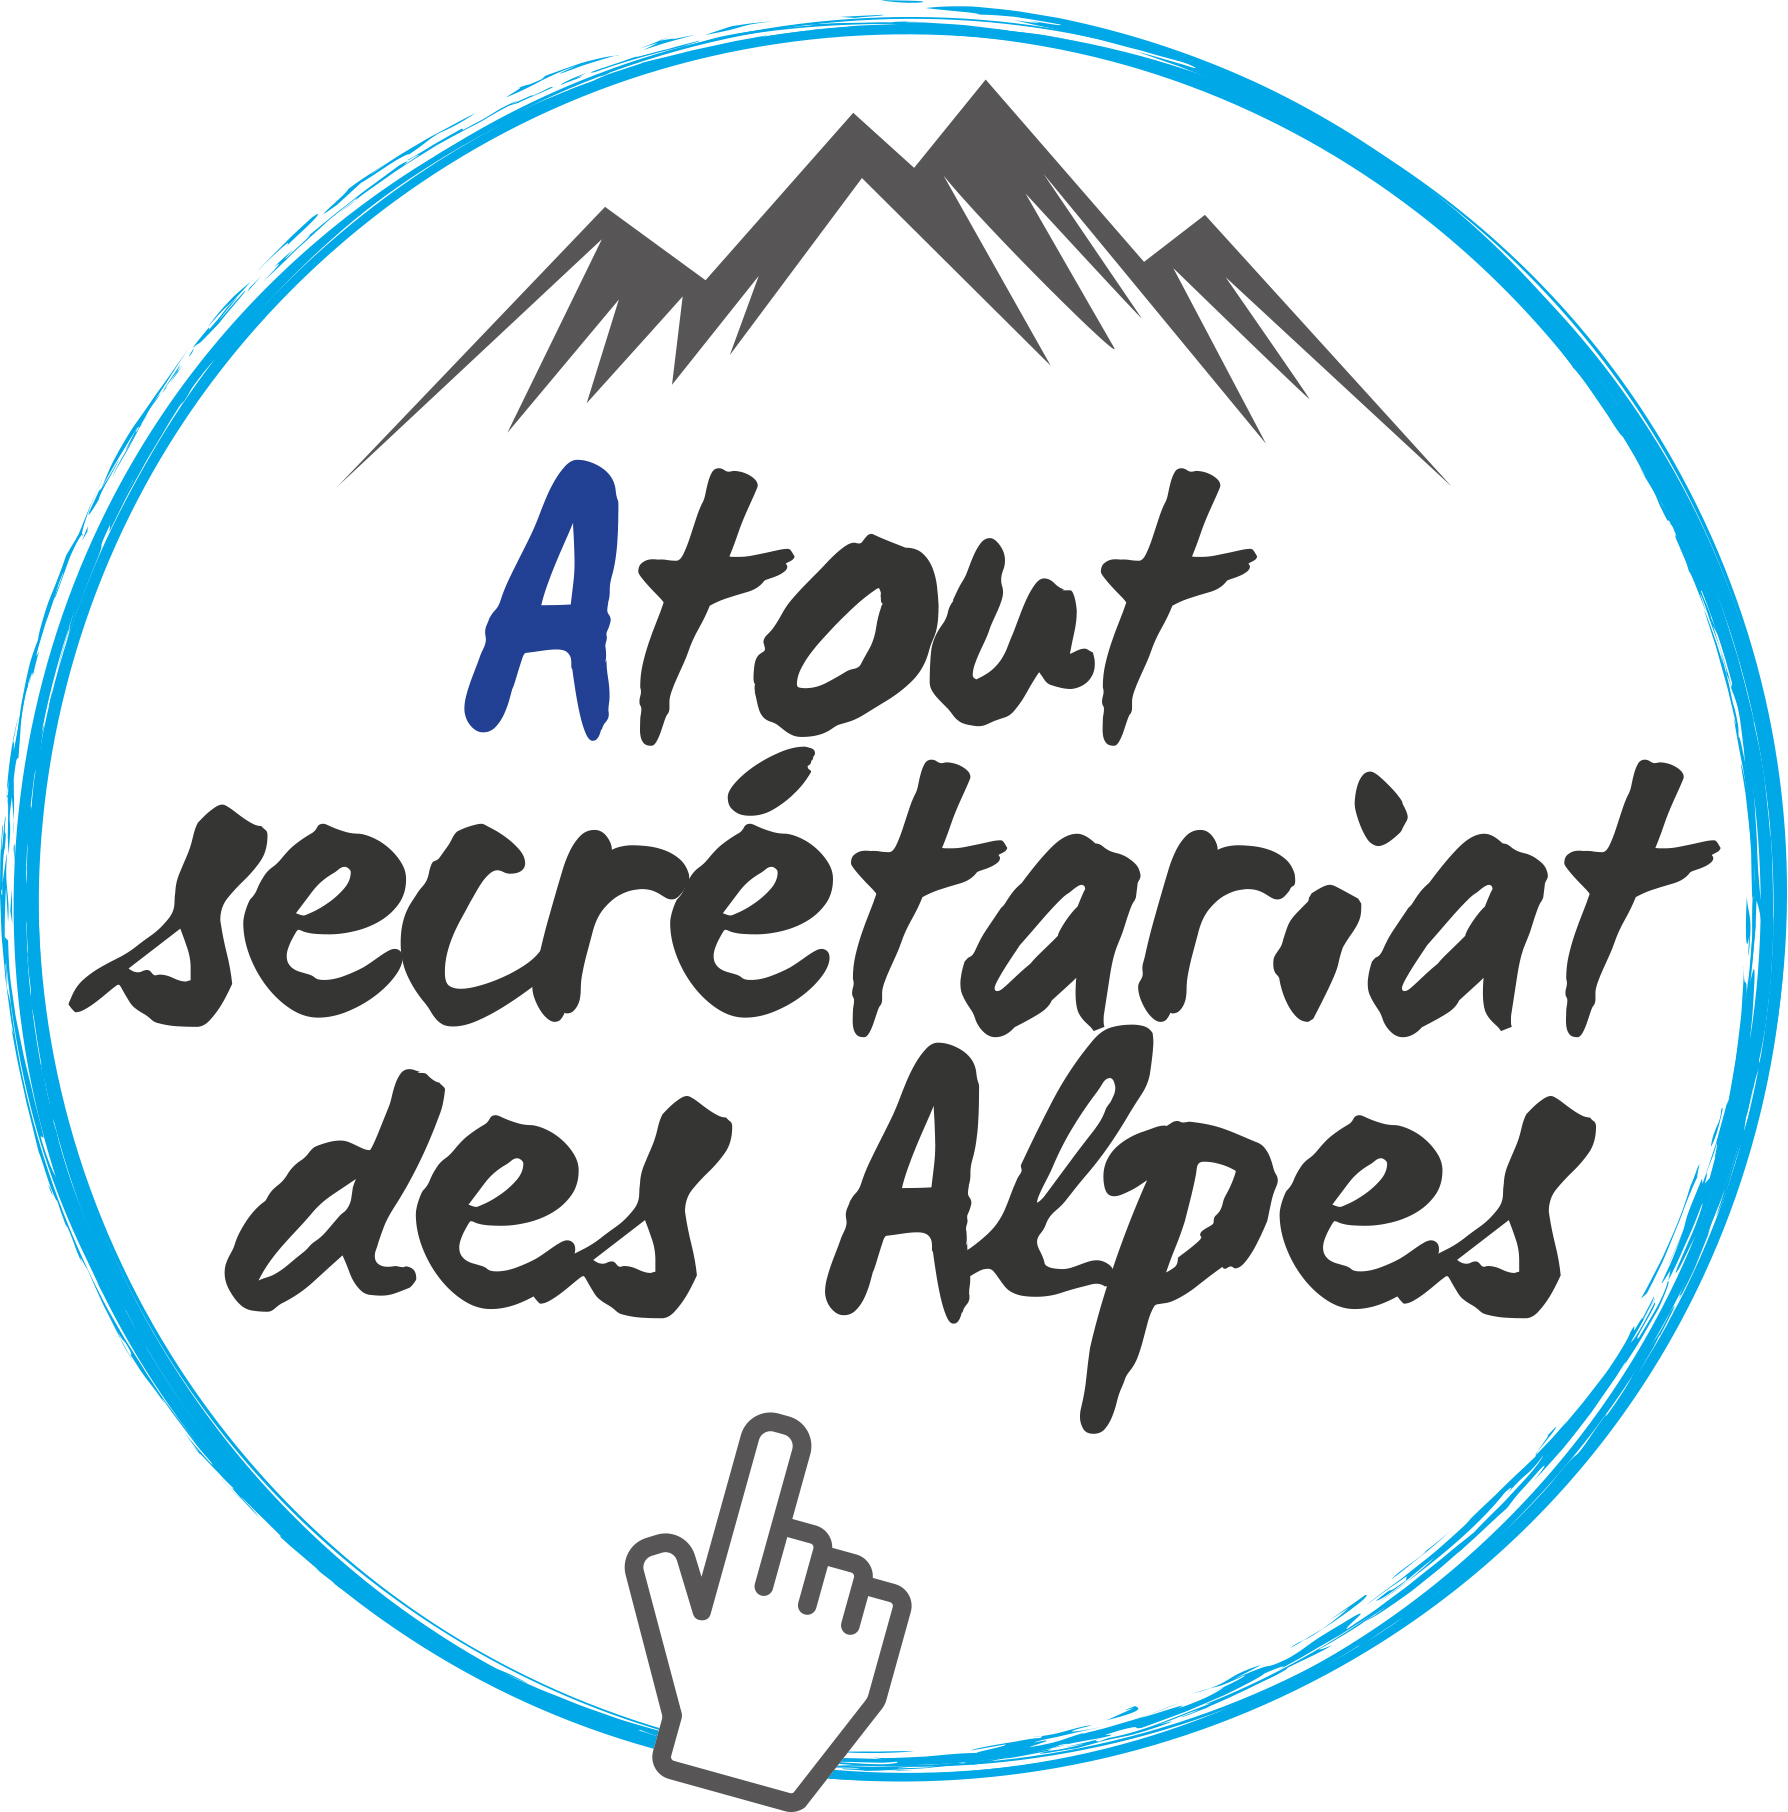 Facilitatrice sur toutes les fonctions supports de l’entreprise, Atout secrétariat des Alpes met à profit son expertise...